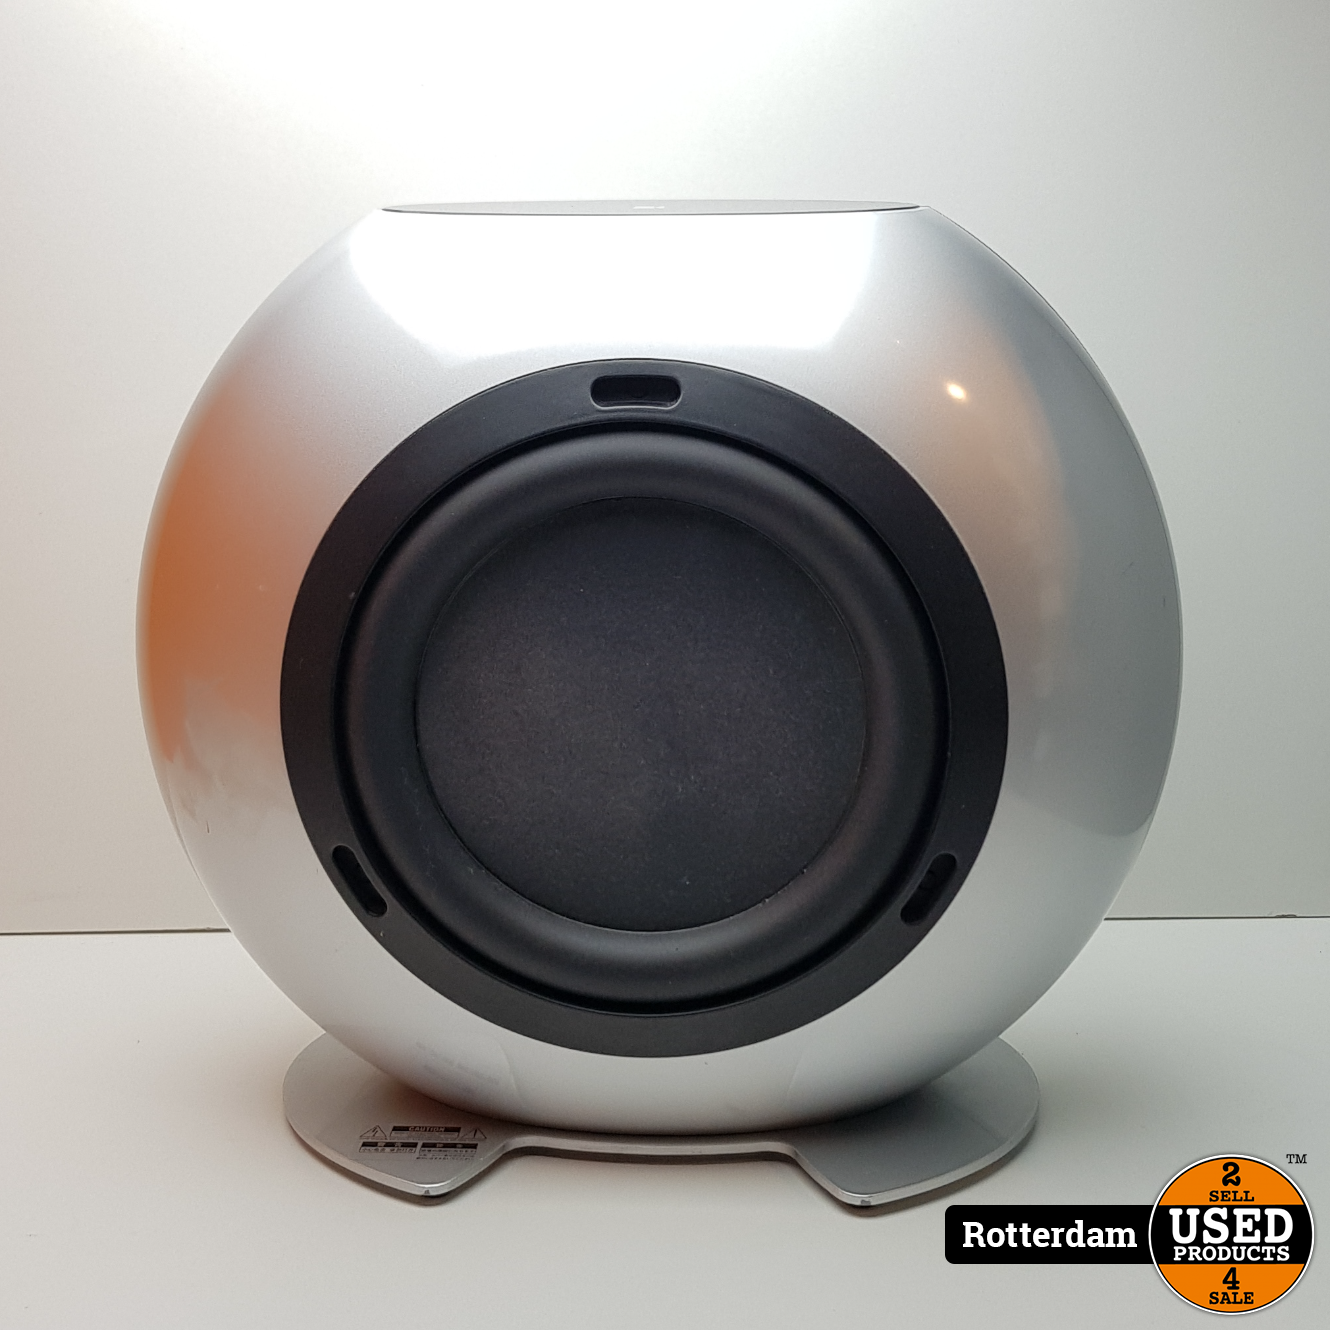 SP3513 speaker met Subwoofer - Met Garantie - Products Rotterdam